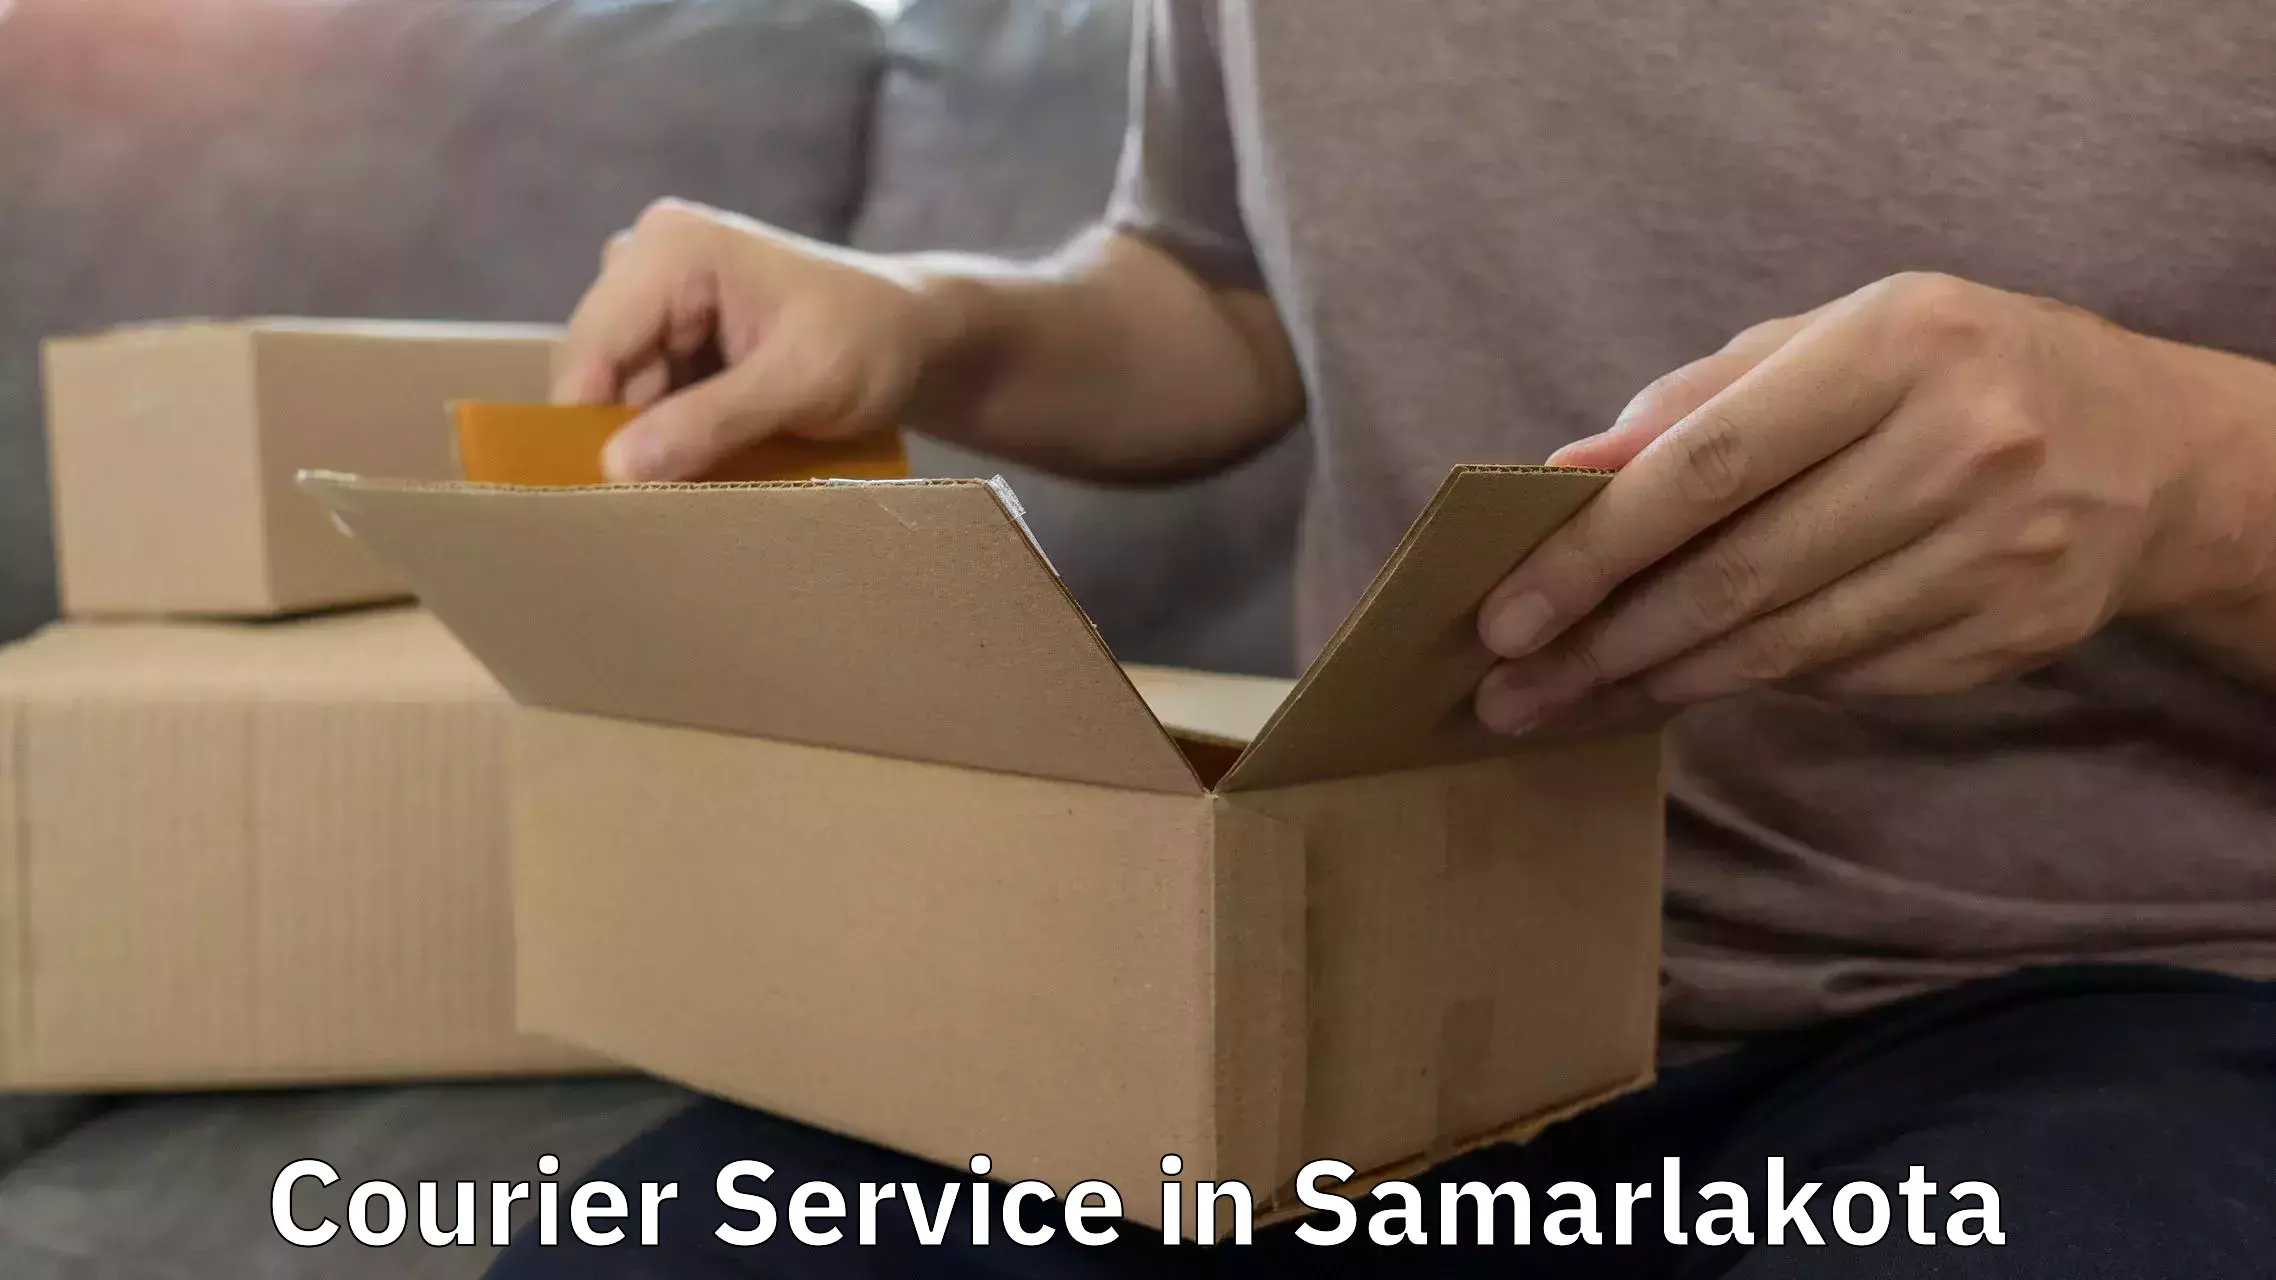 Seamless shipping service in Samarlakota